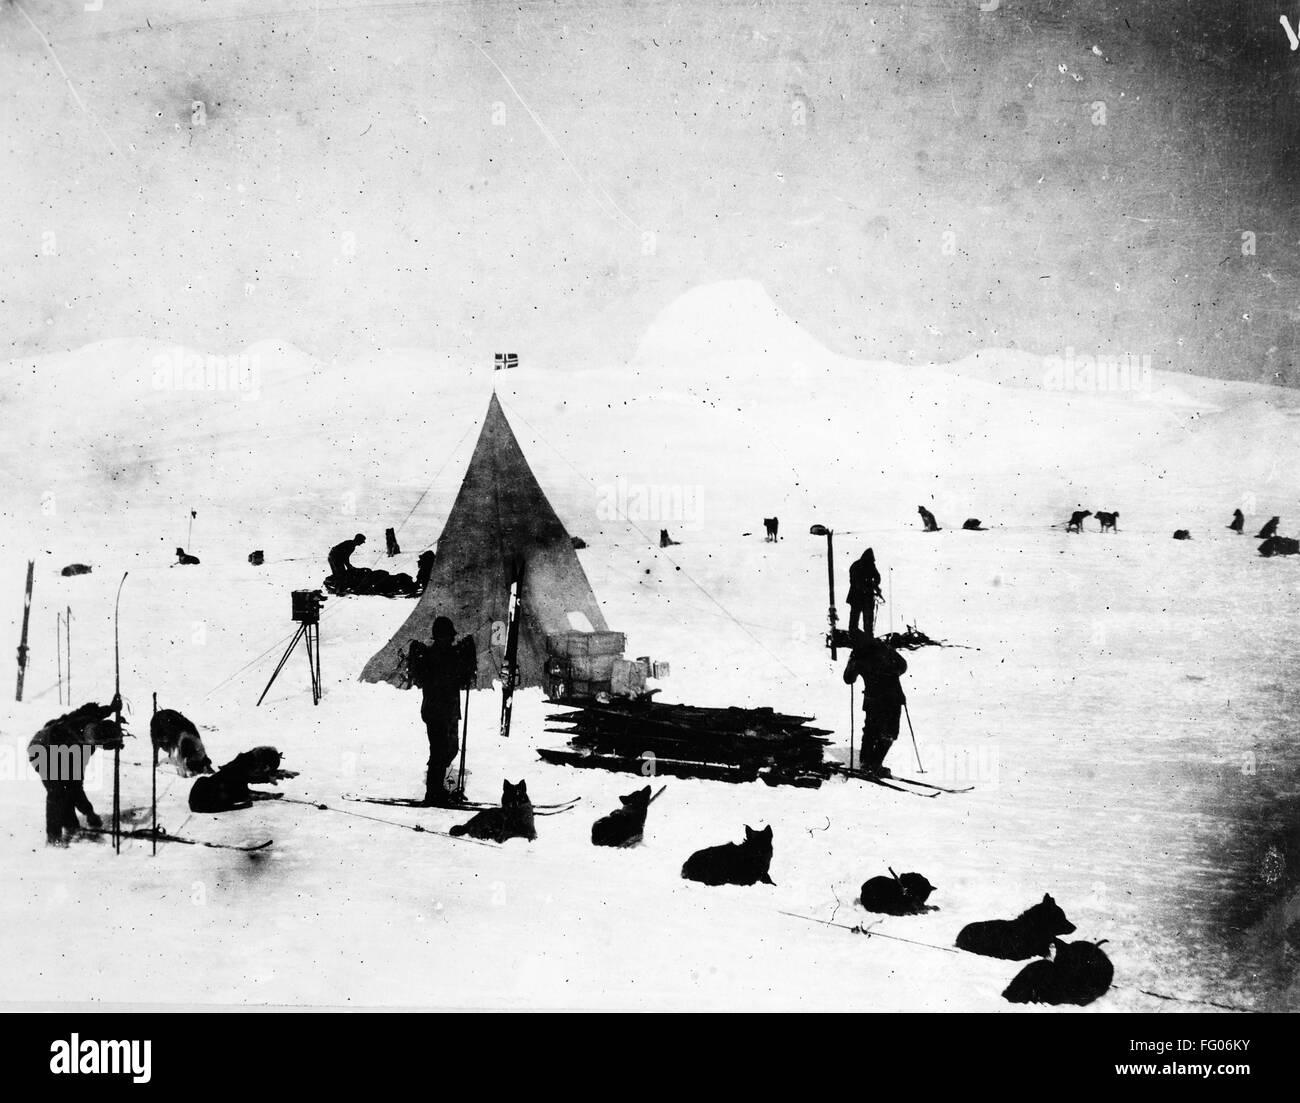 ROALD AMUNDSEN (1872-1928). /nNorwegian polar explorer. Camp of Amundsen and crew photographed during an Antarctic expedition, 23 May 1912. Stock Photo